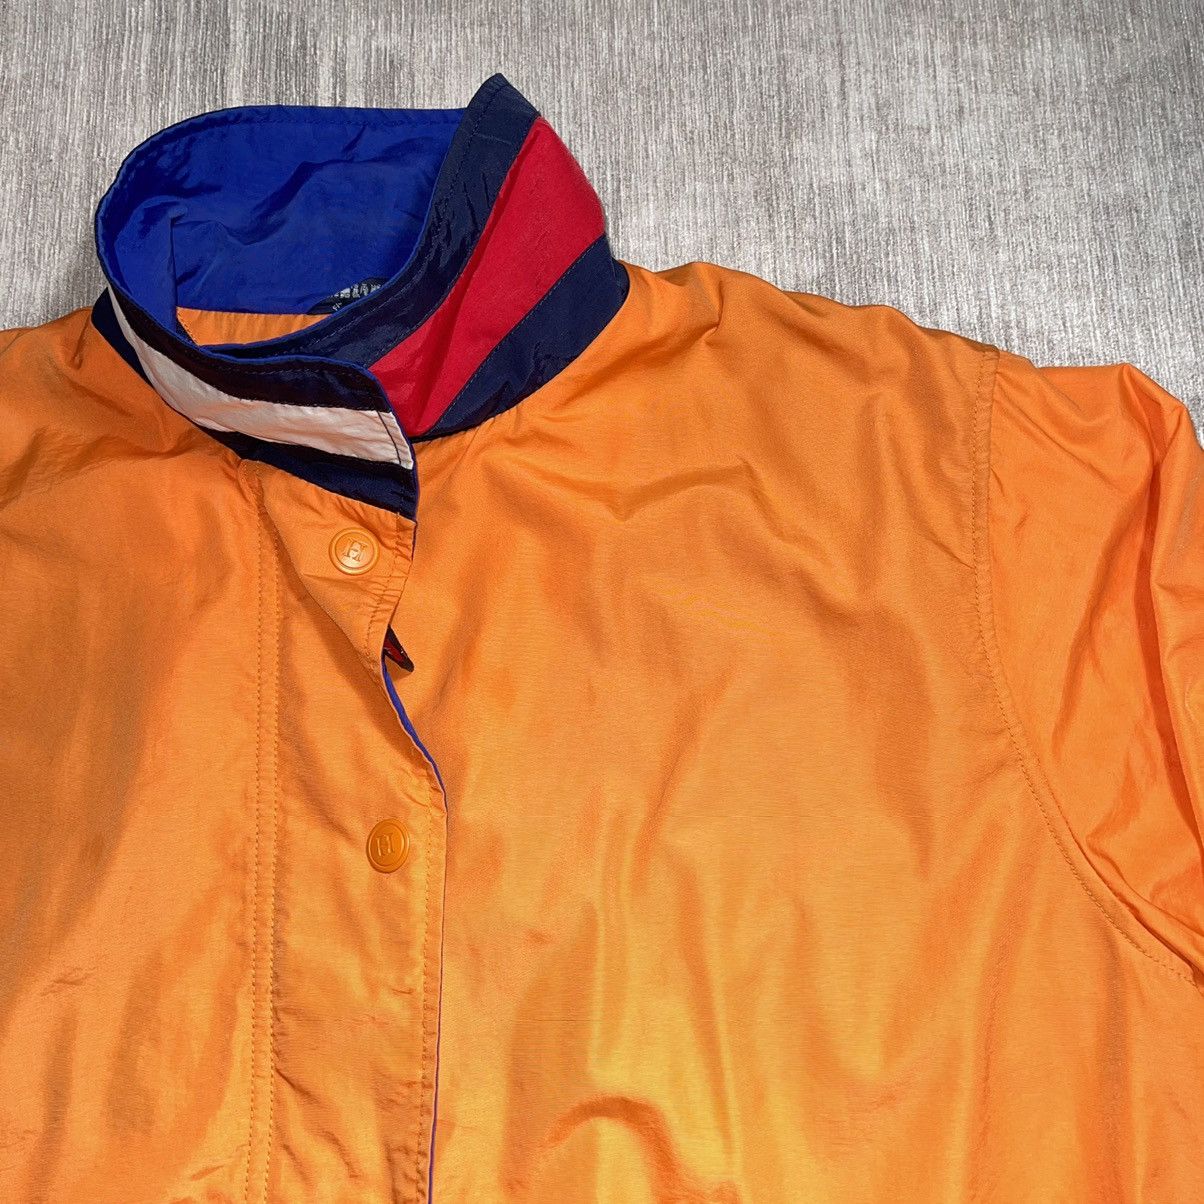 Tommy Hilfiger Vtg 90’s Tommy Hilfiger Jacket M Orange Flag Collar Size US M / EU 48-50 / 2 - 3 Thumbnail